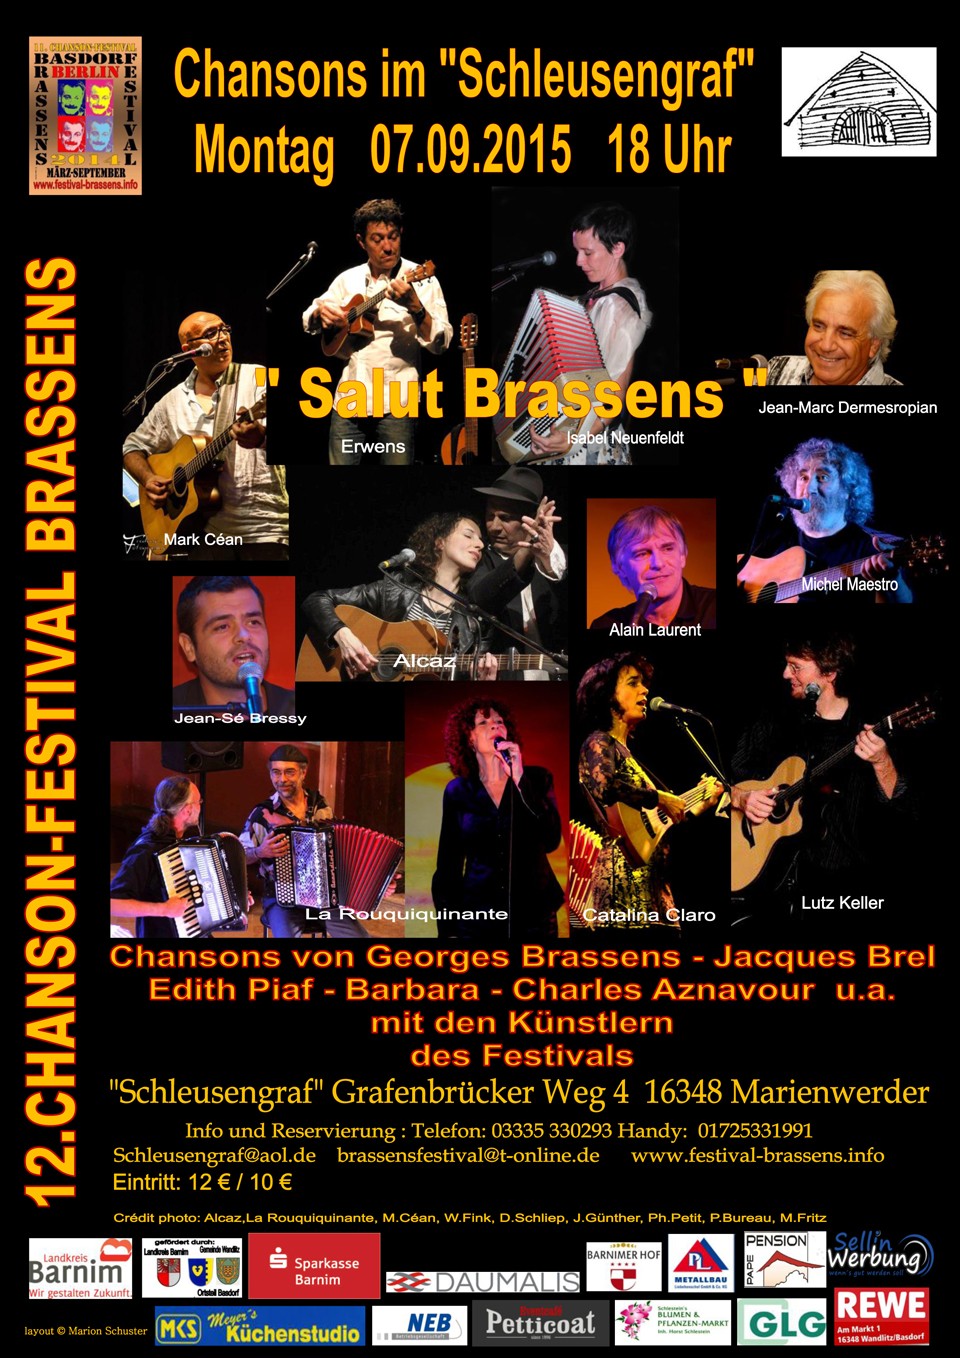 Schleusengraf Konzertort im Festival Brassens